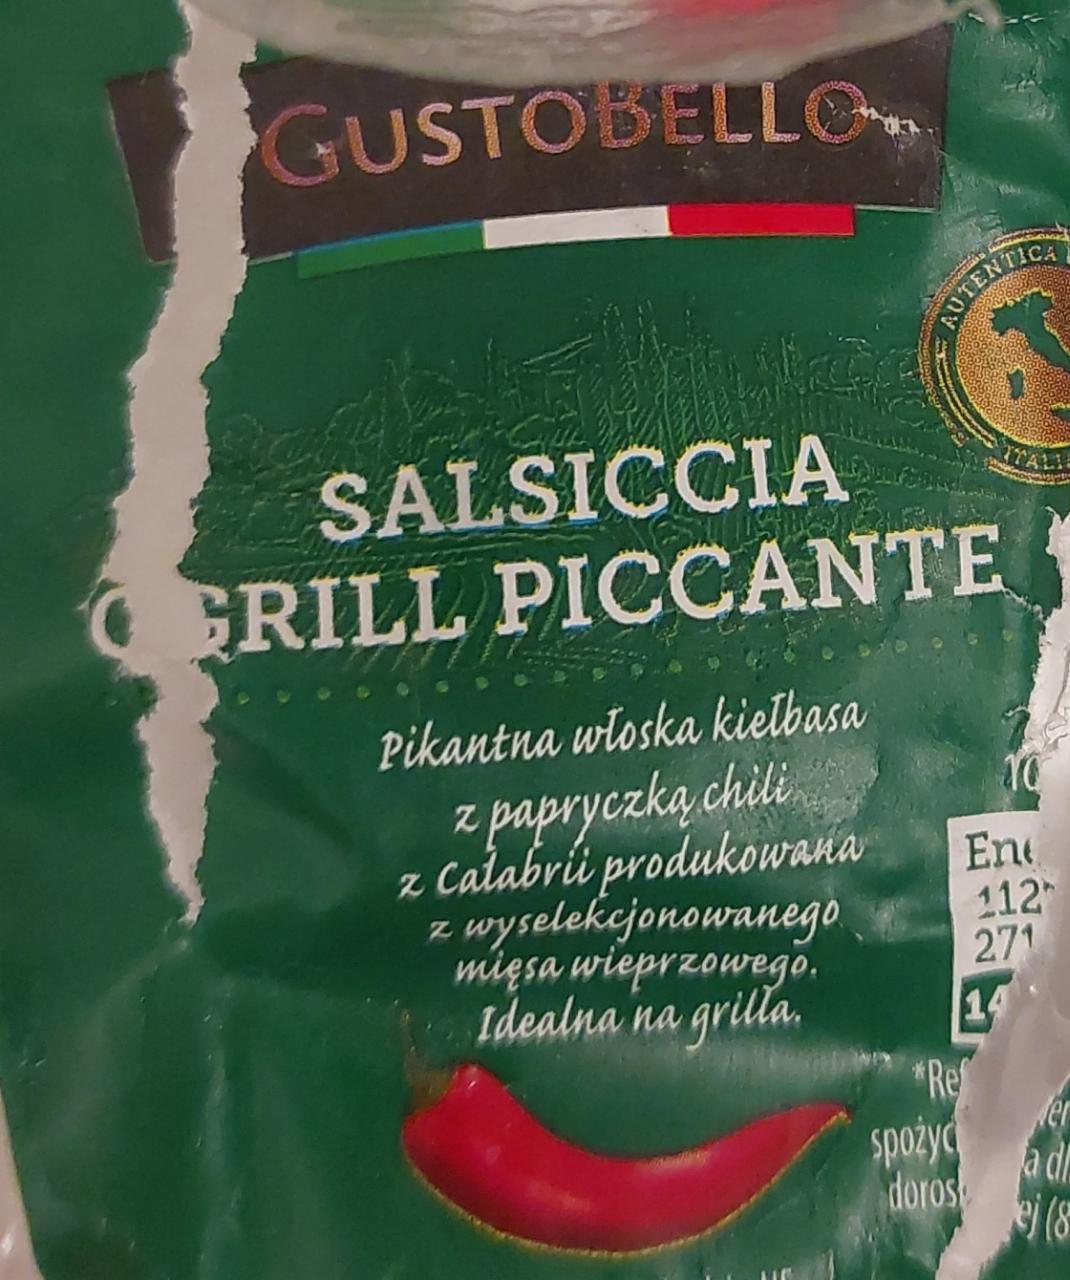 Zdjęcia - Salsiccia grill piccante GustoBello